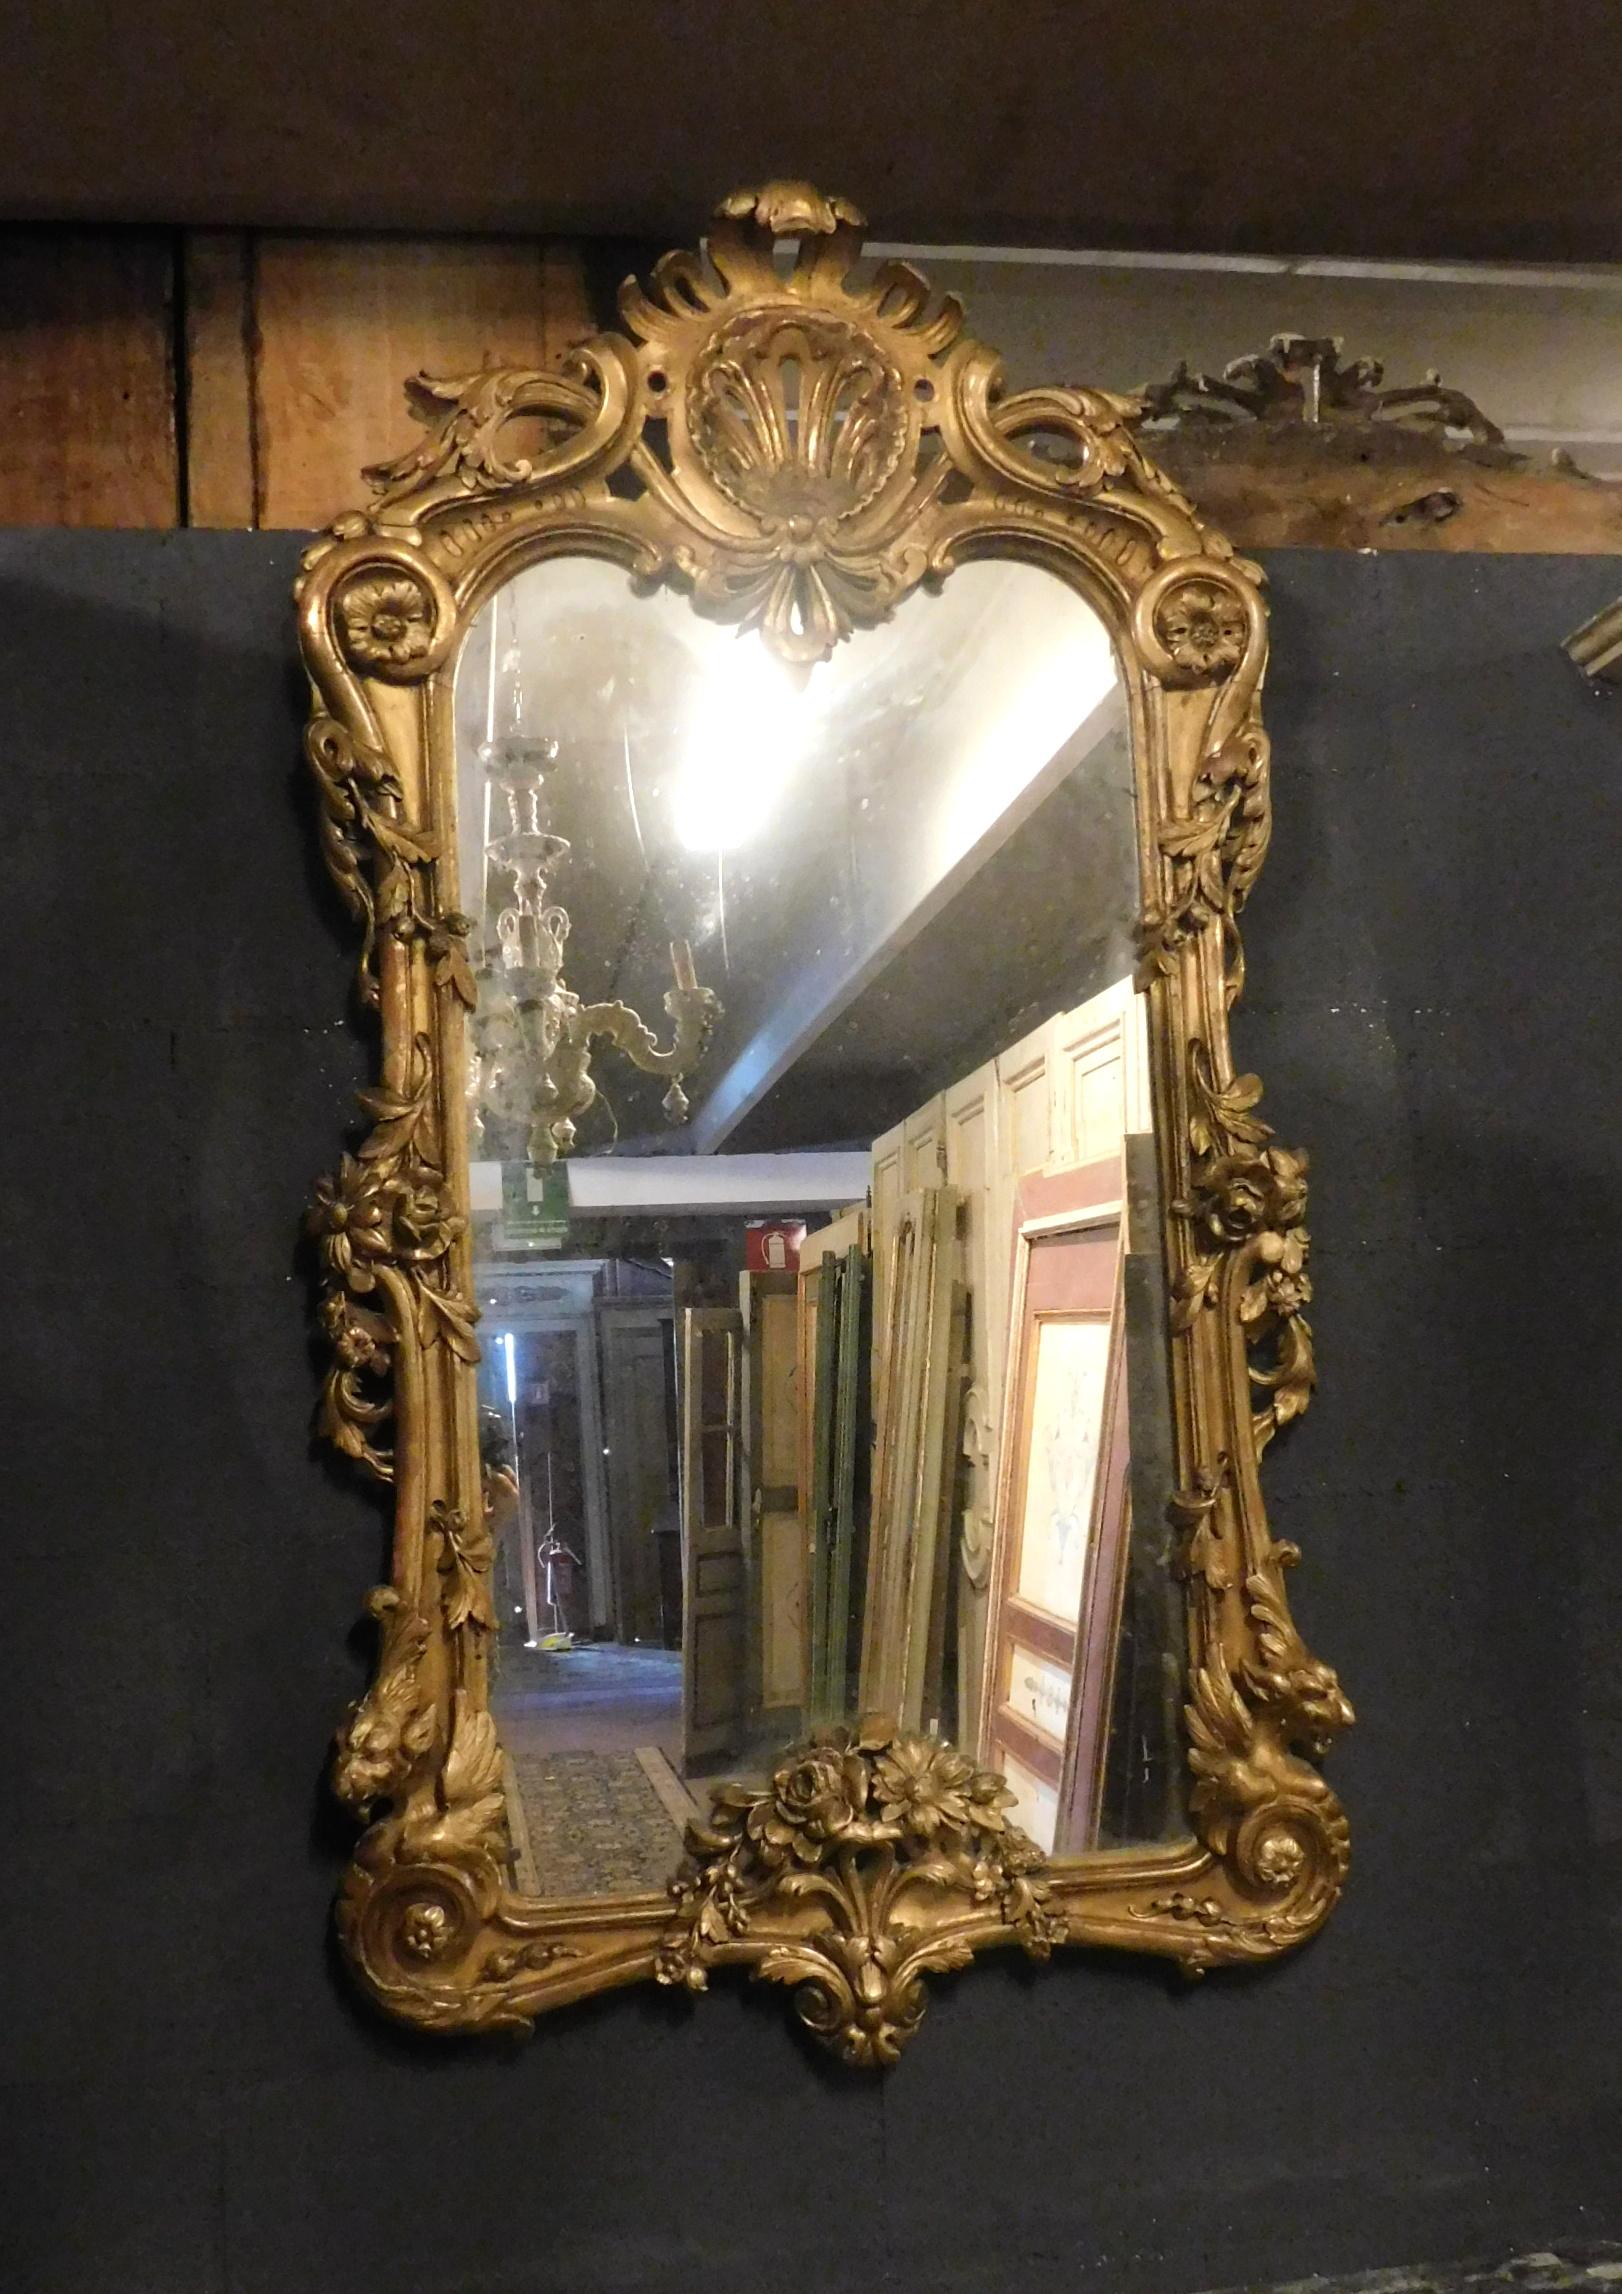 Miroir ancien en bois doré sculpté, très riche et si décoré de motifs floraux, traitements spéciaux, élégance et raffinement provenant d'une maison de luxe en Italie, convient pour être placé au-dessus des cheminées ou accroché au mur, rendra vos